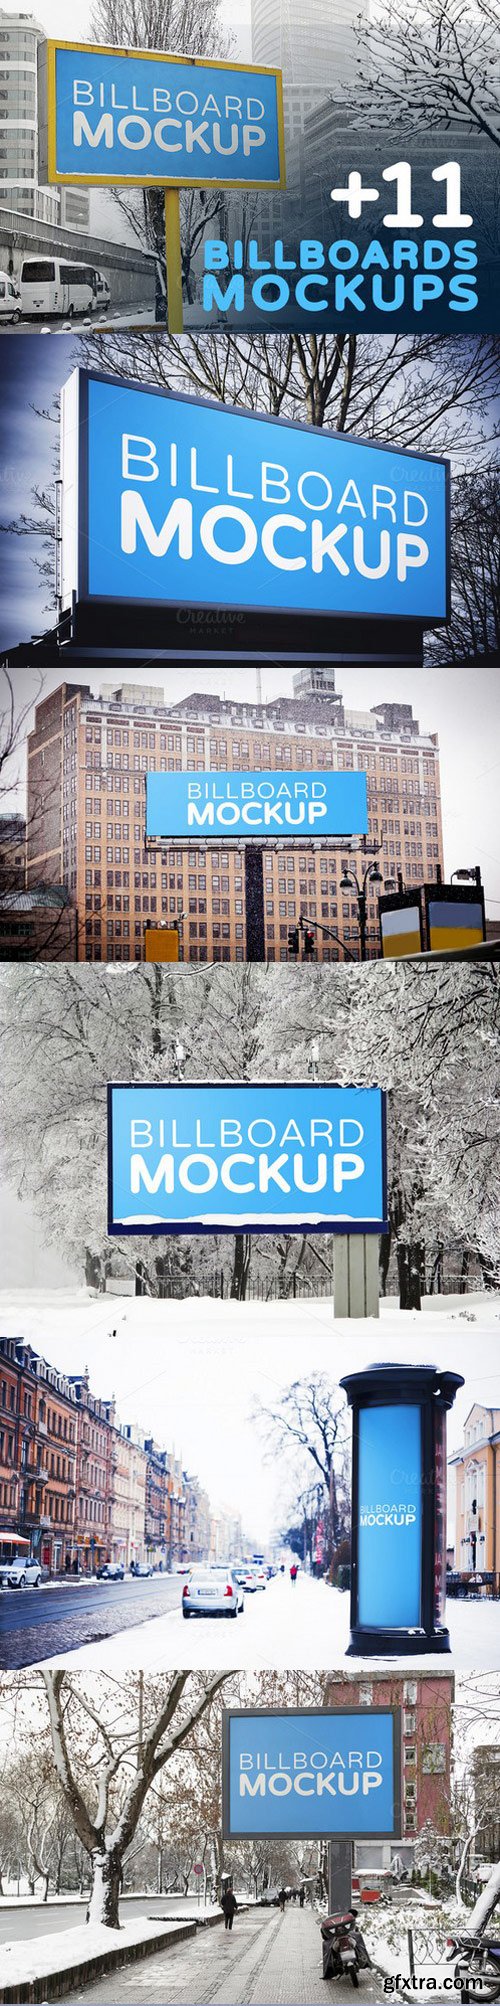 CM - Billboards Mockups in Winter 1035516